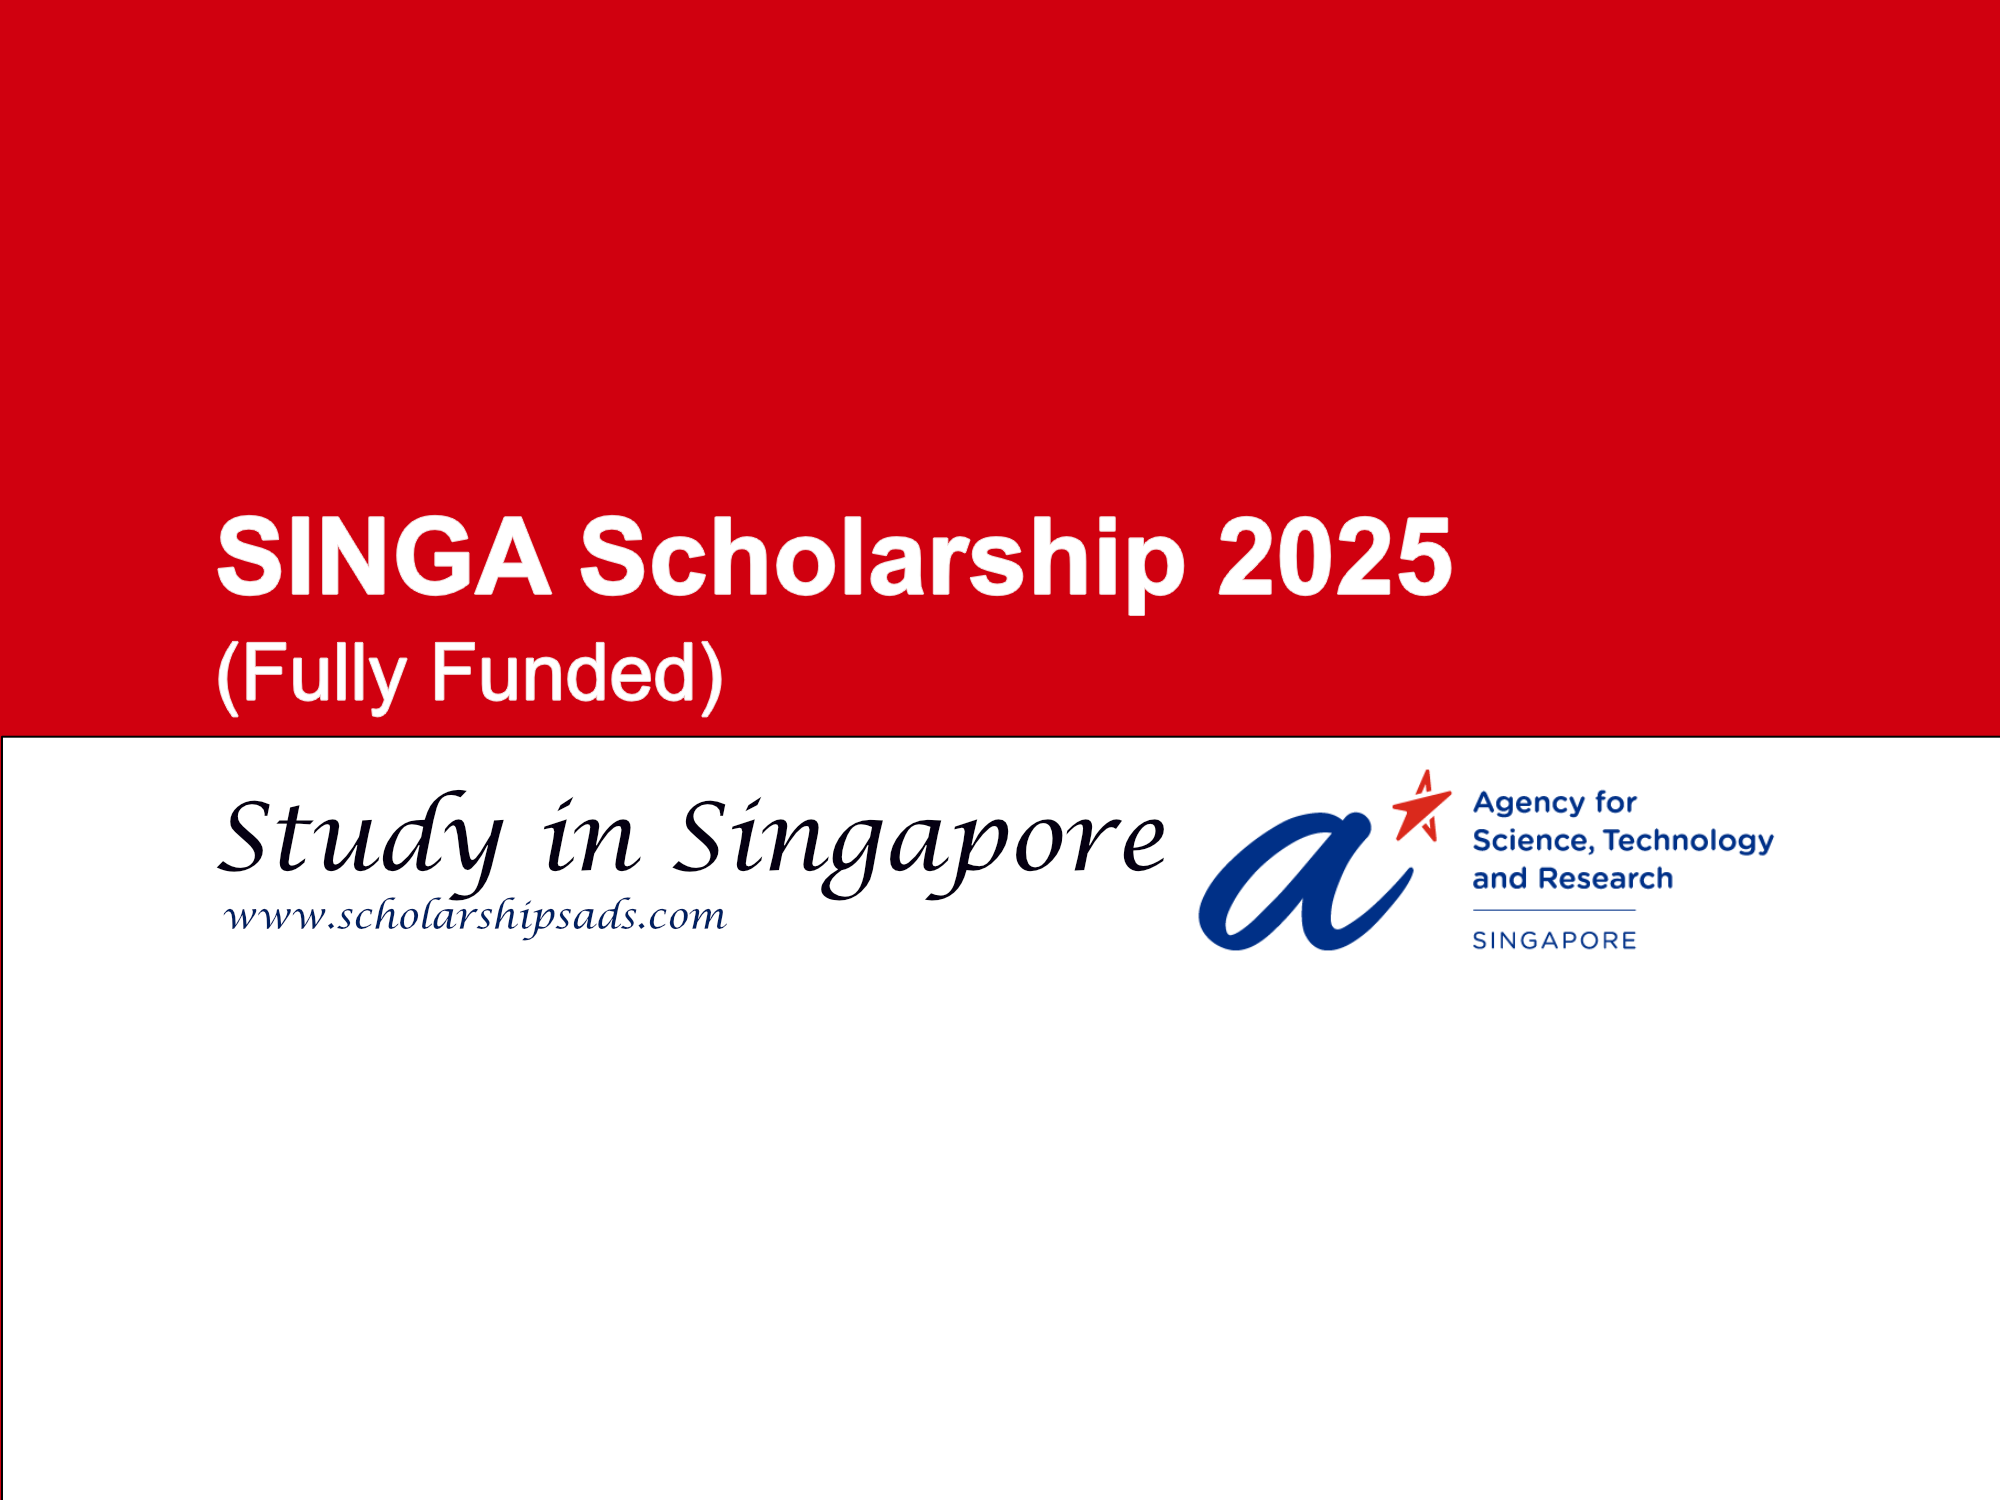 SINGA Scholarship 2025 in Singapore (Fully Funded)